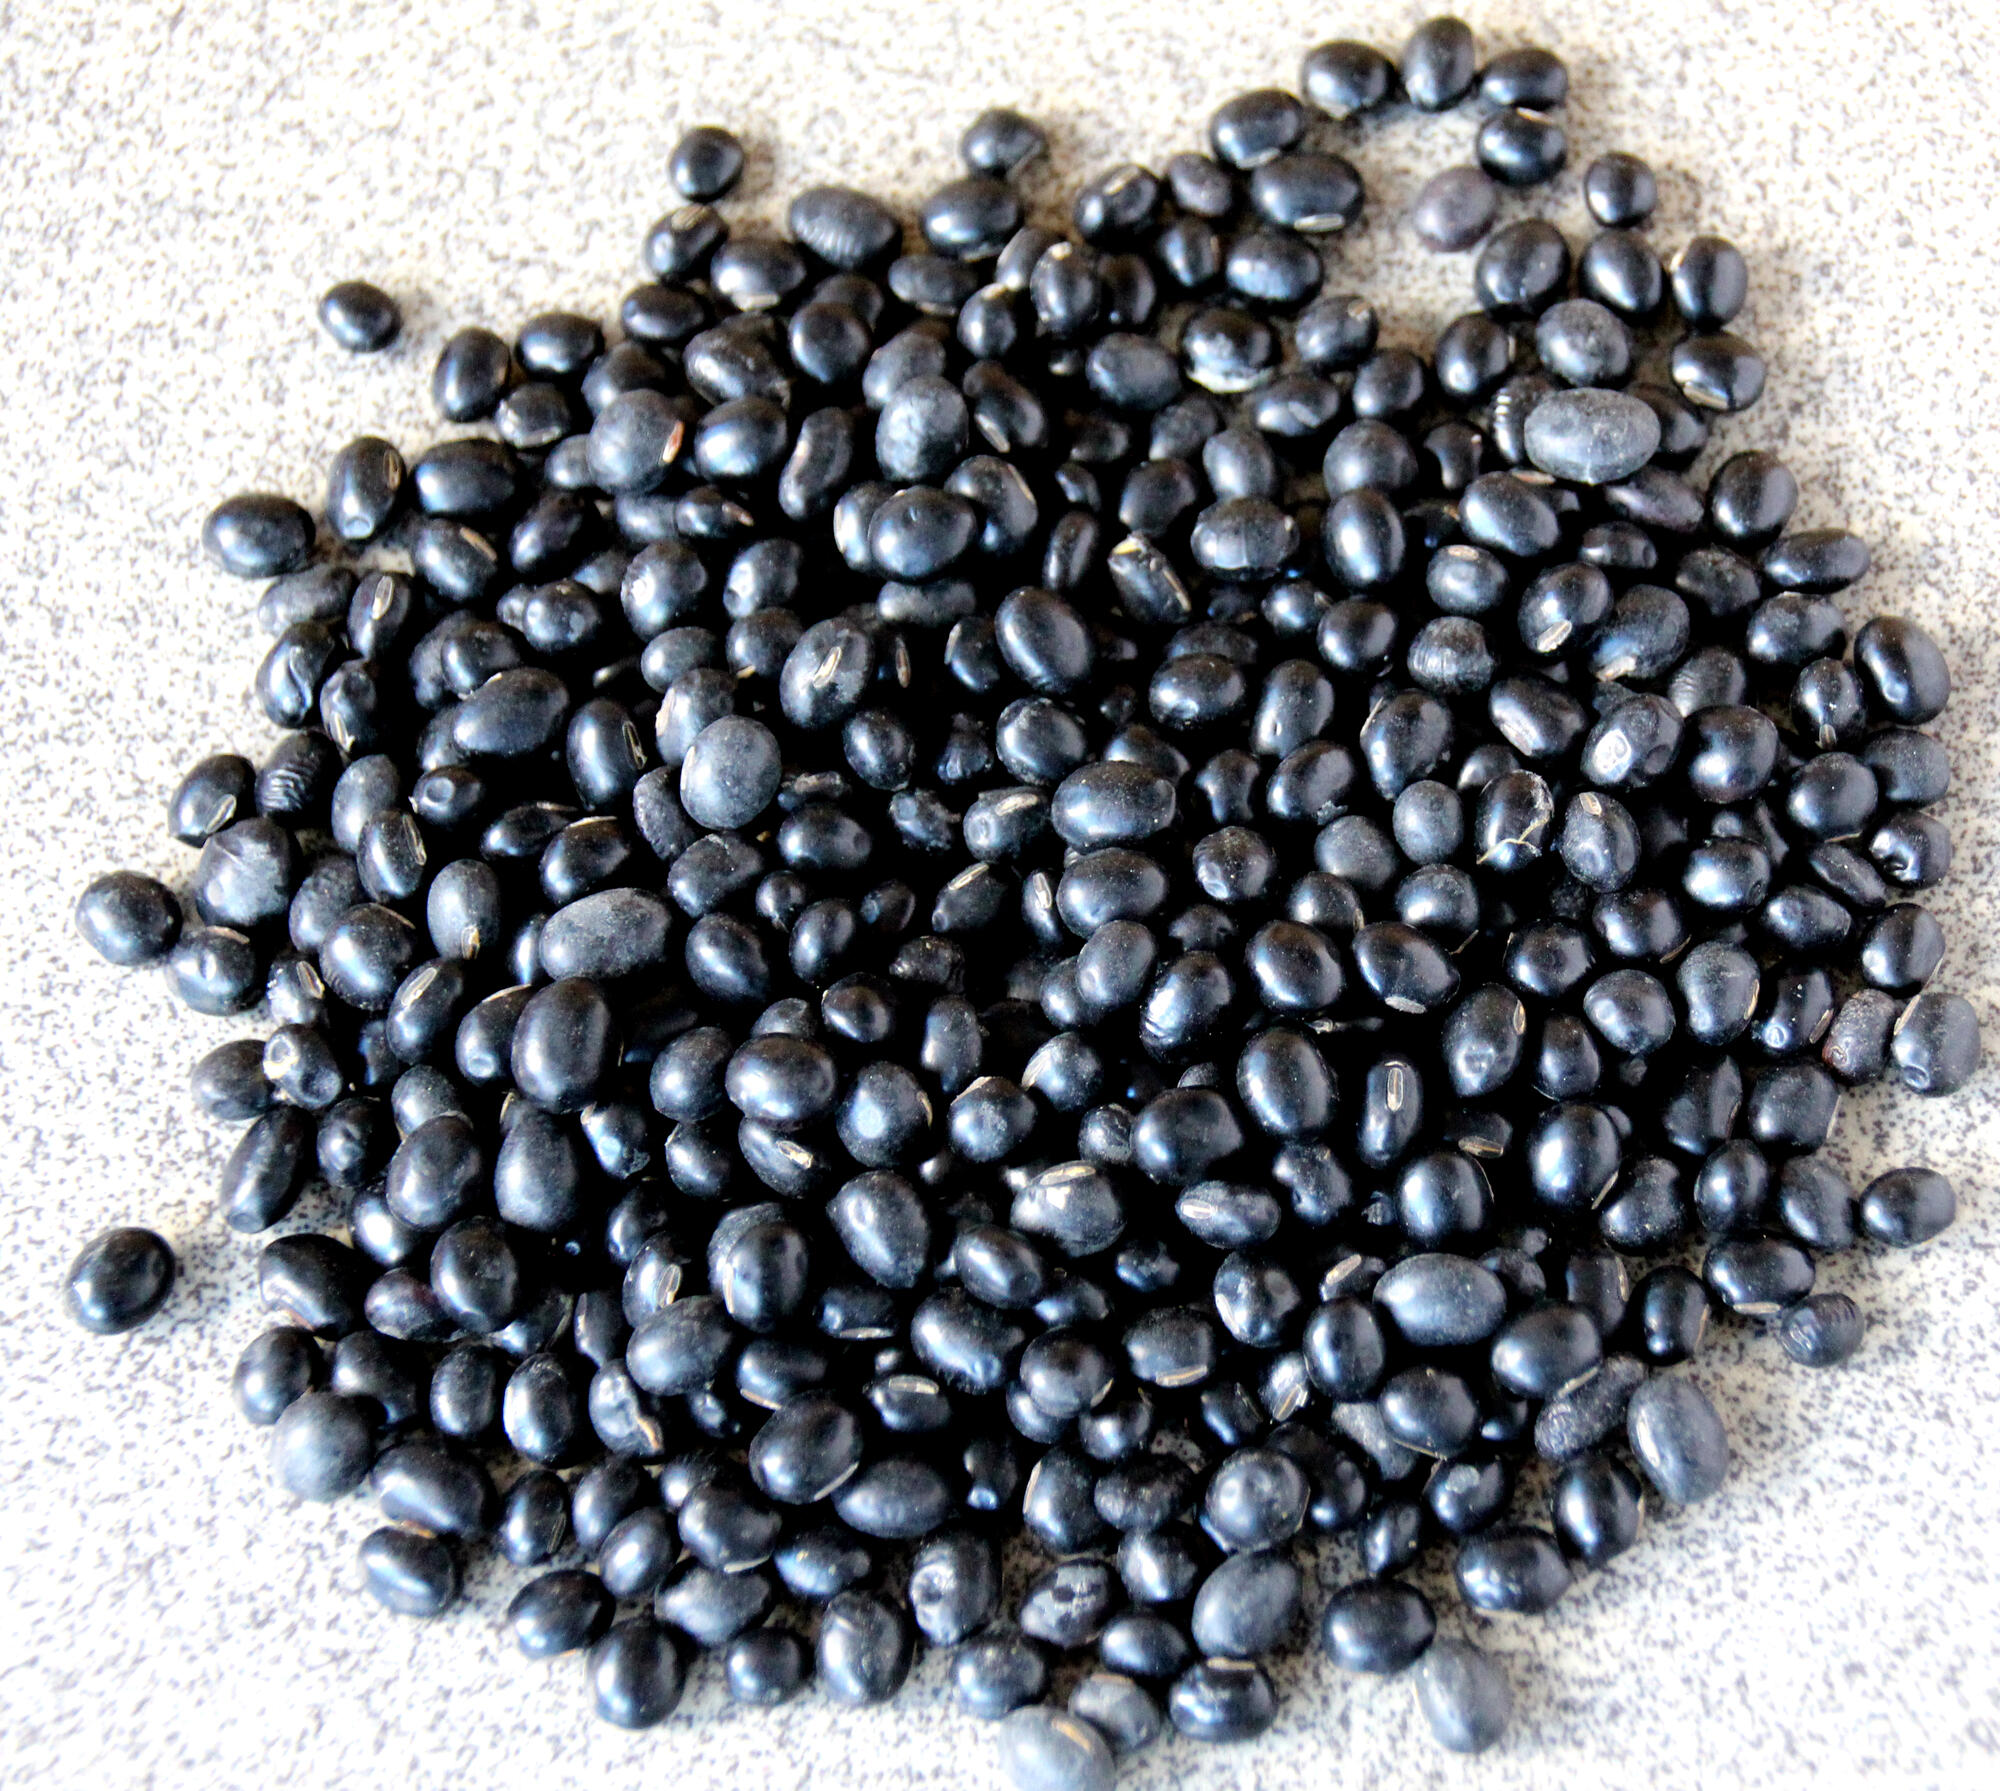 black soya beans.jpg